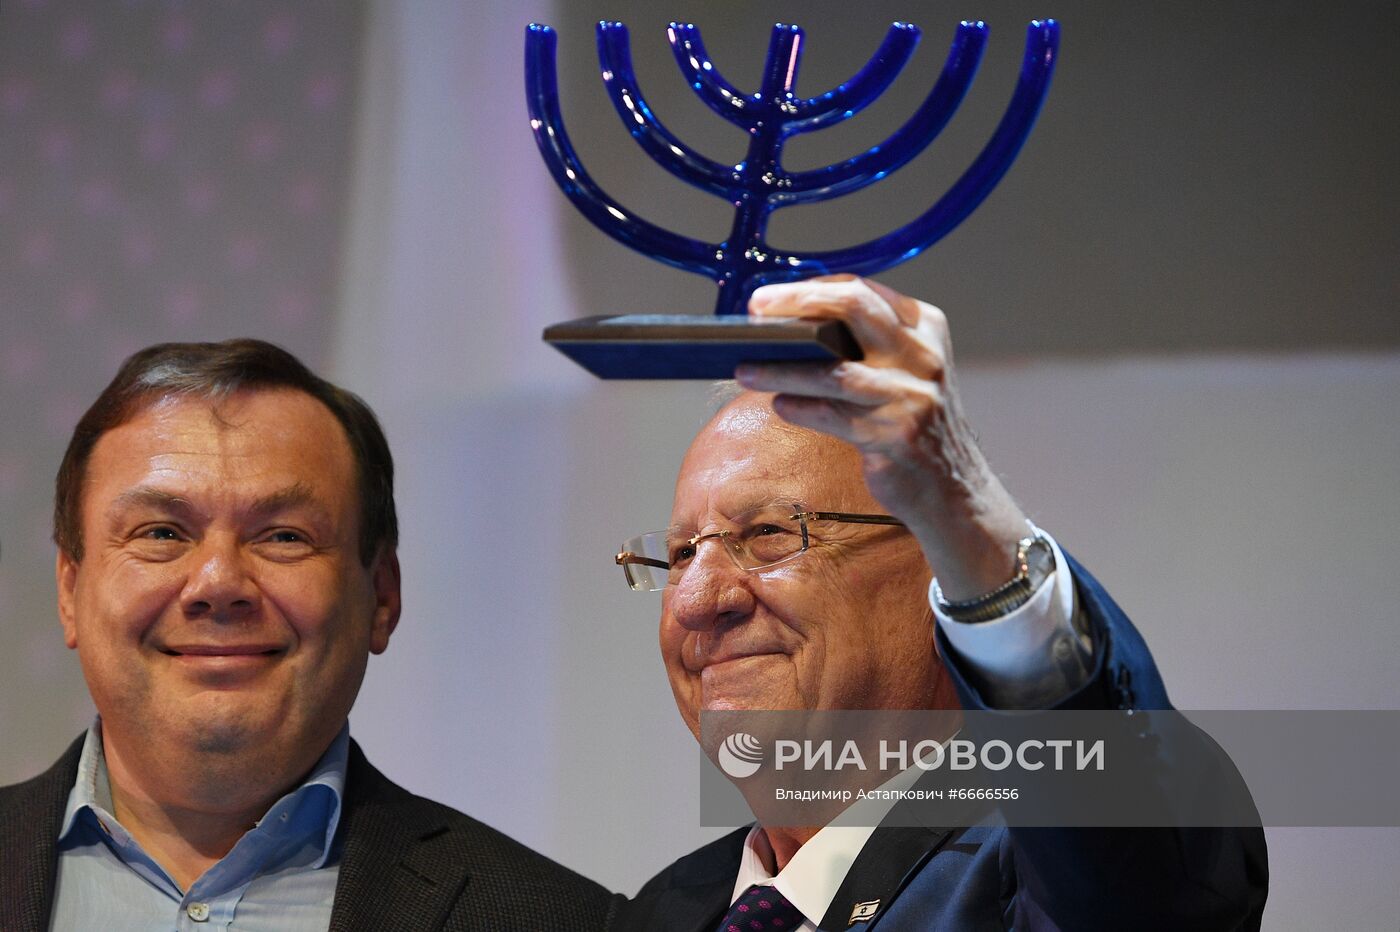 Благотворительный прием в честь 25-летия Российского еврейского конгресса